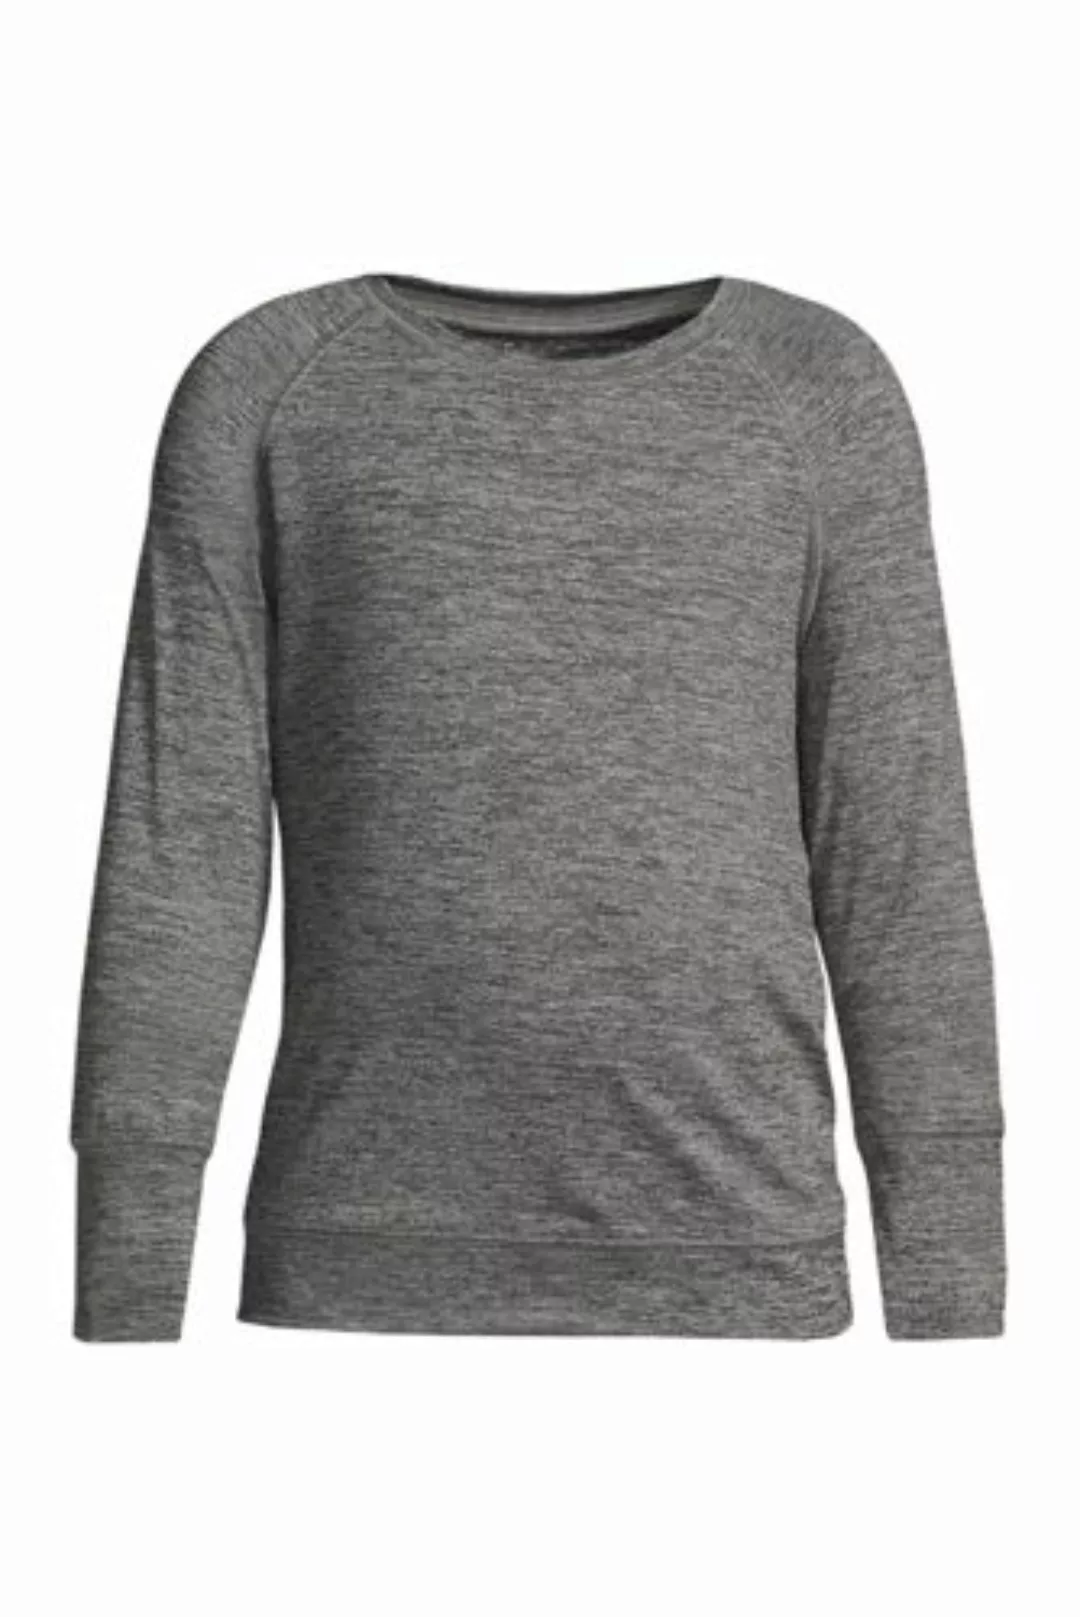 Active-Langarm-Shirt, Größe: 110-116, Schwarz, Elasthan, by Lands' End, Sch günstig online kaufen